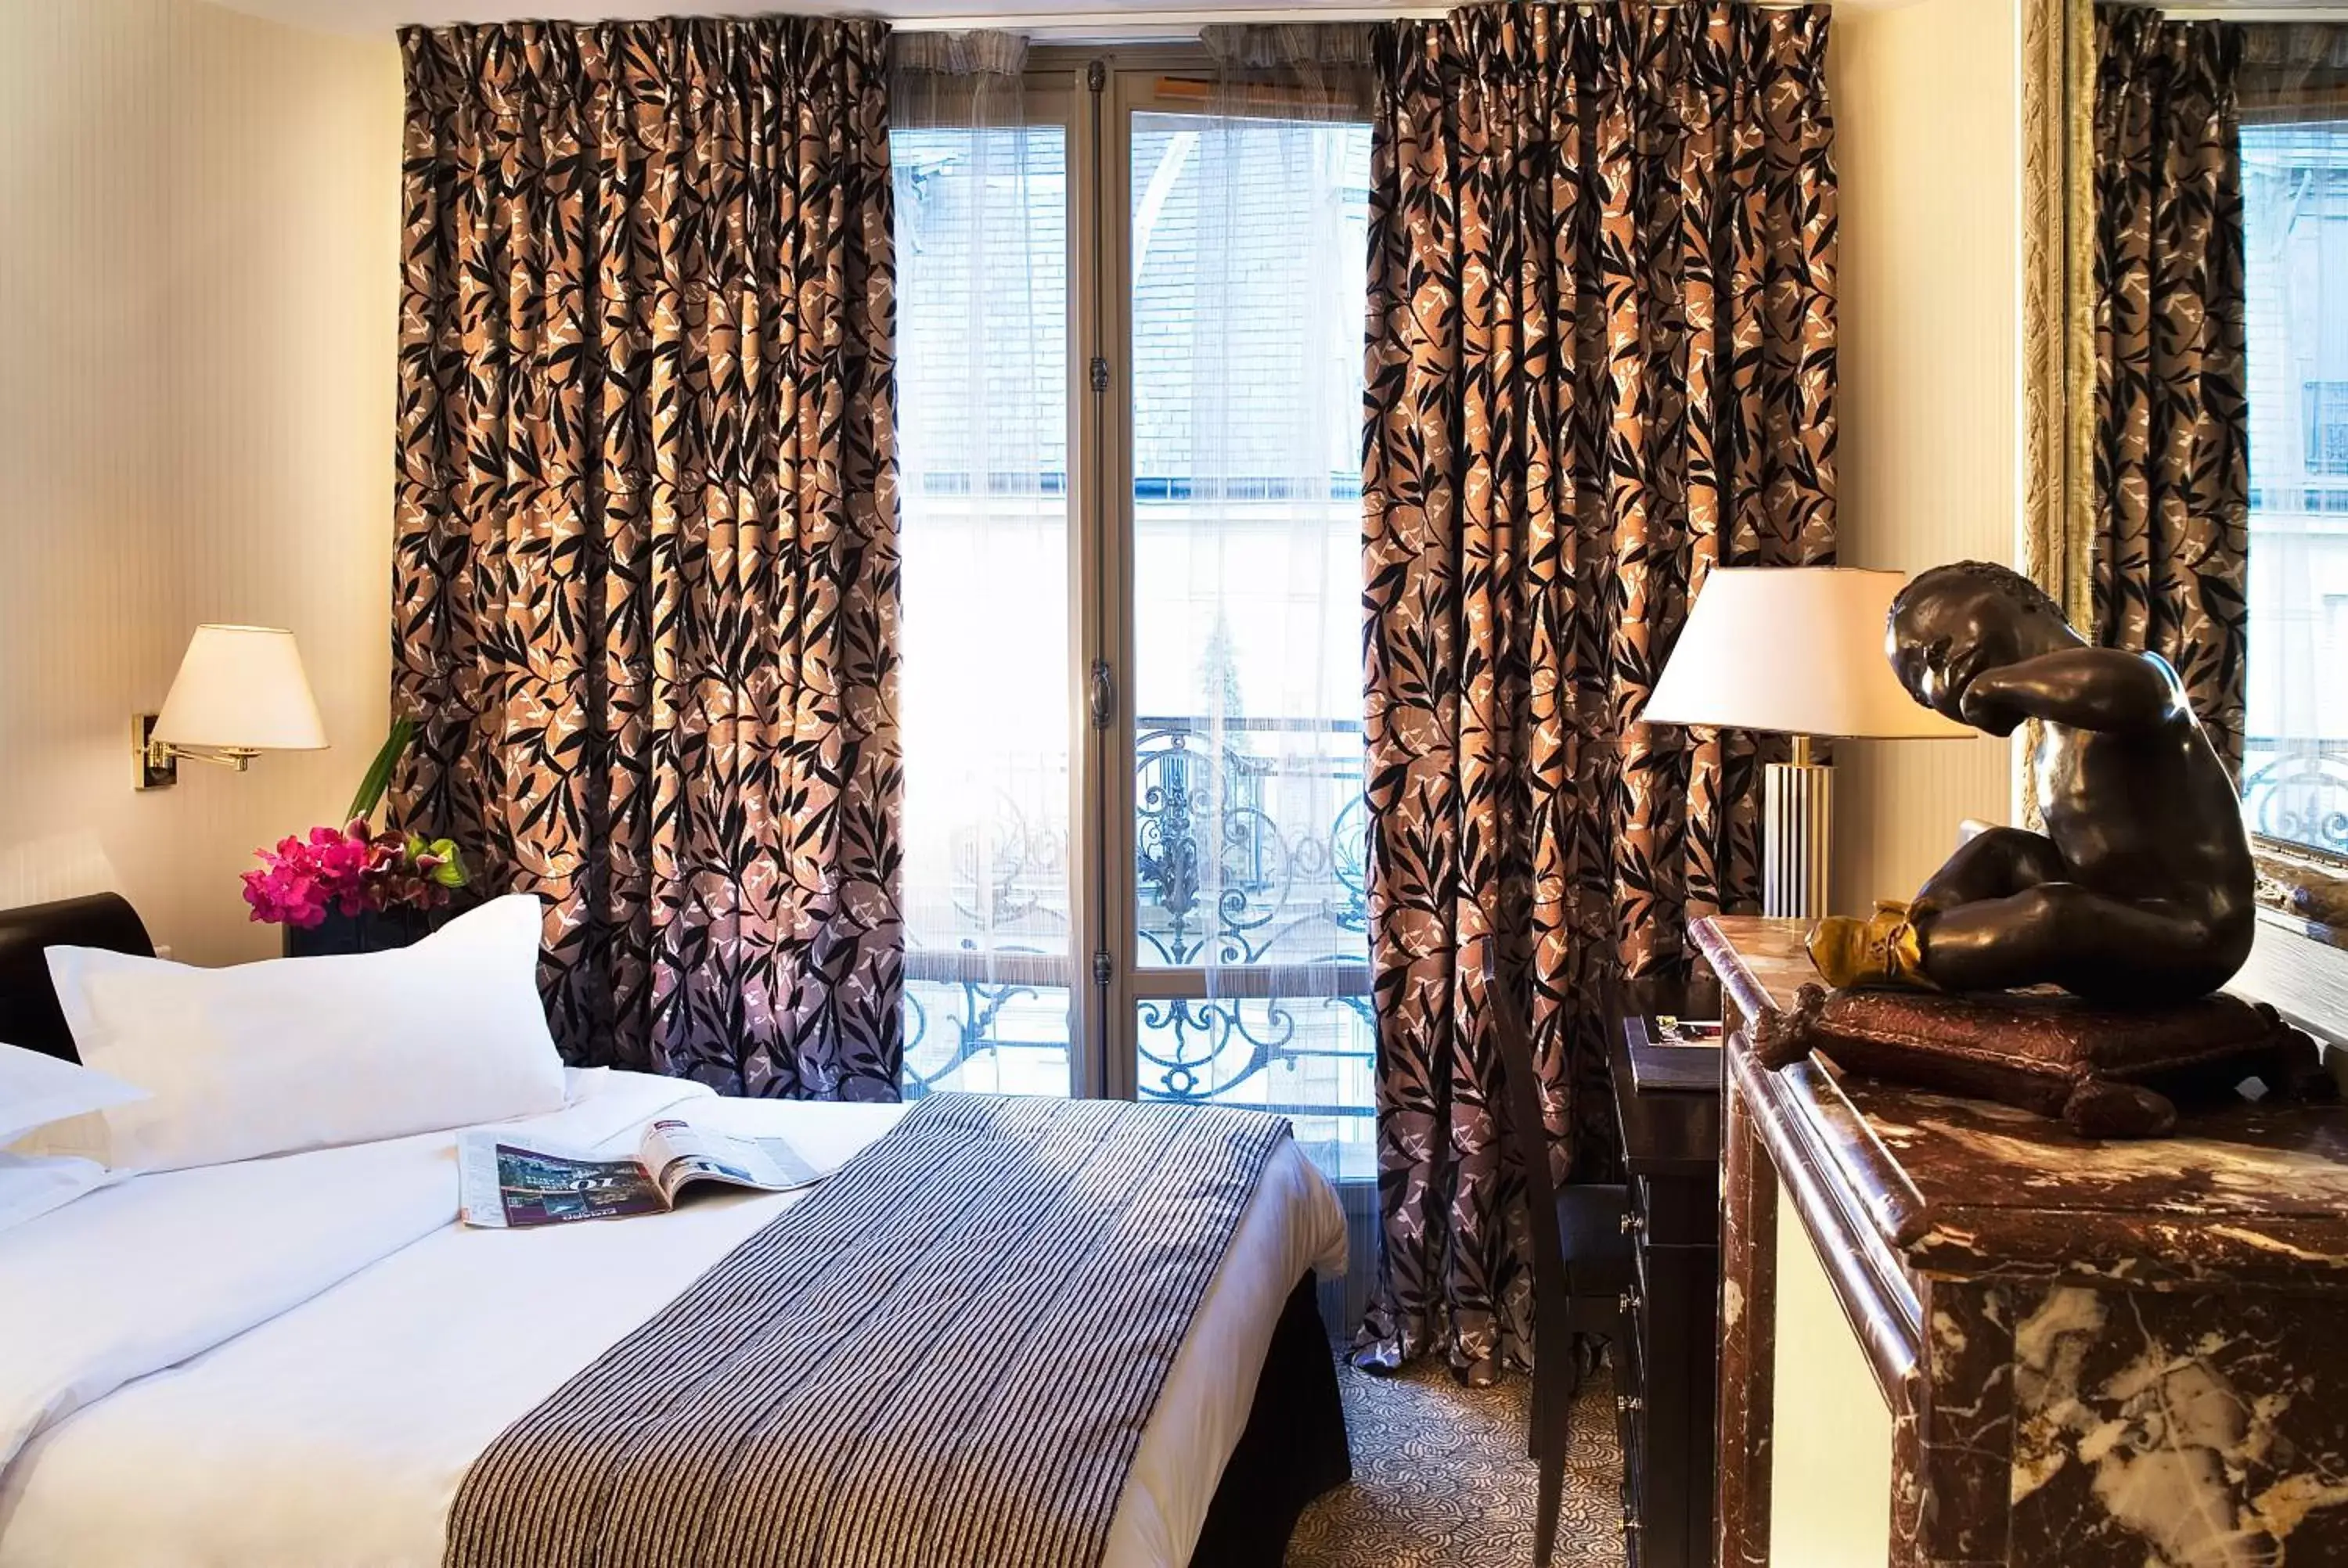 Bed in Hotel Vaneau Saint Germain